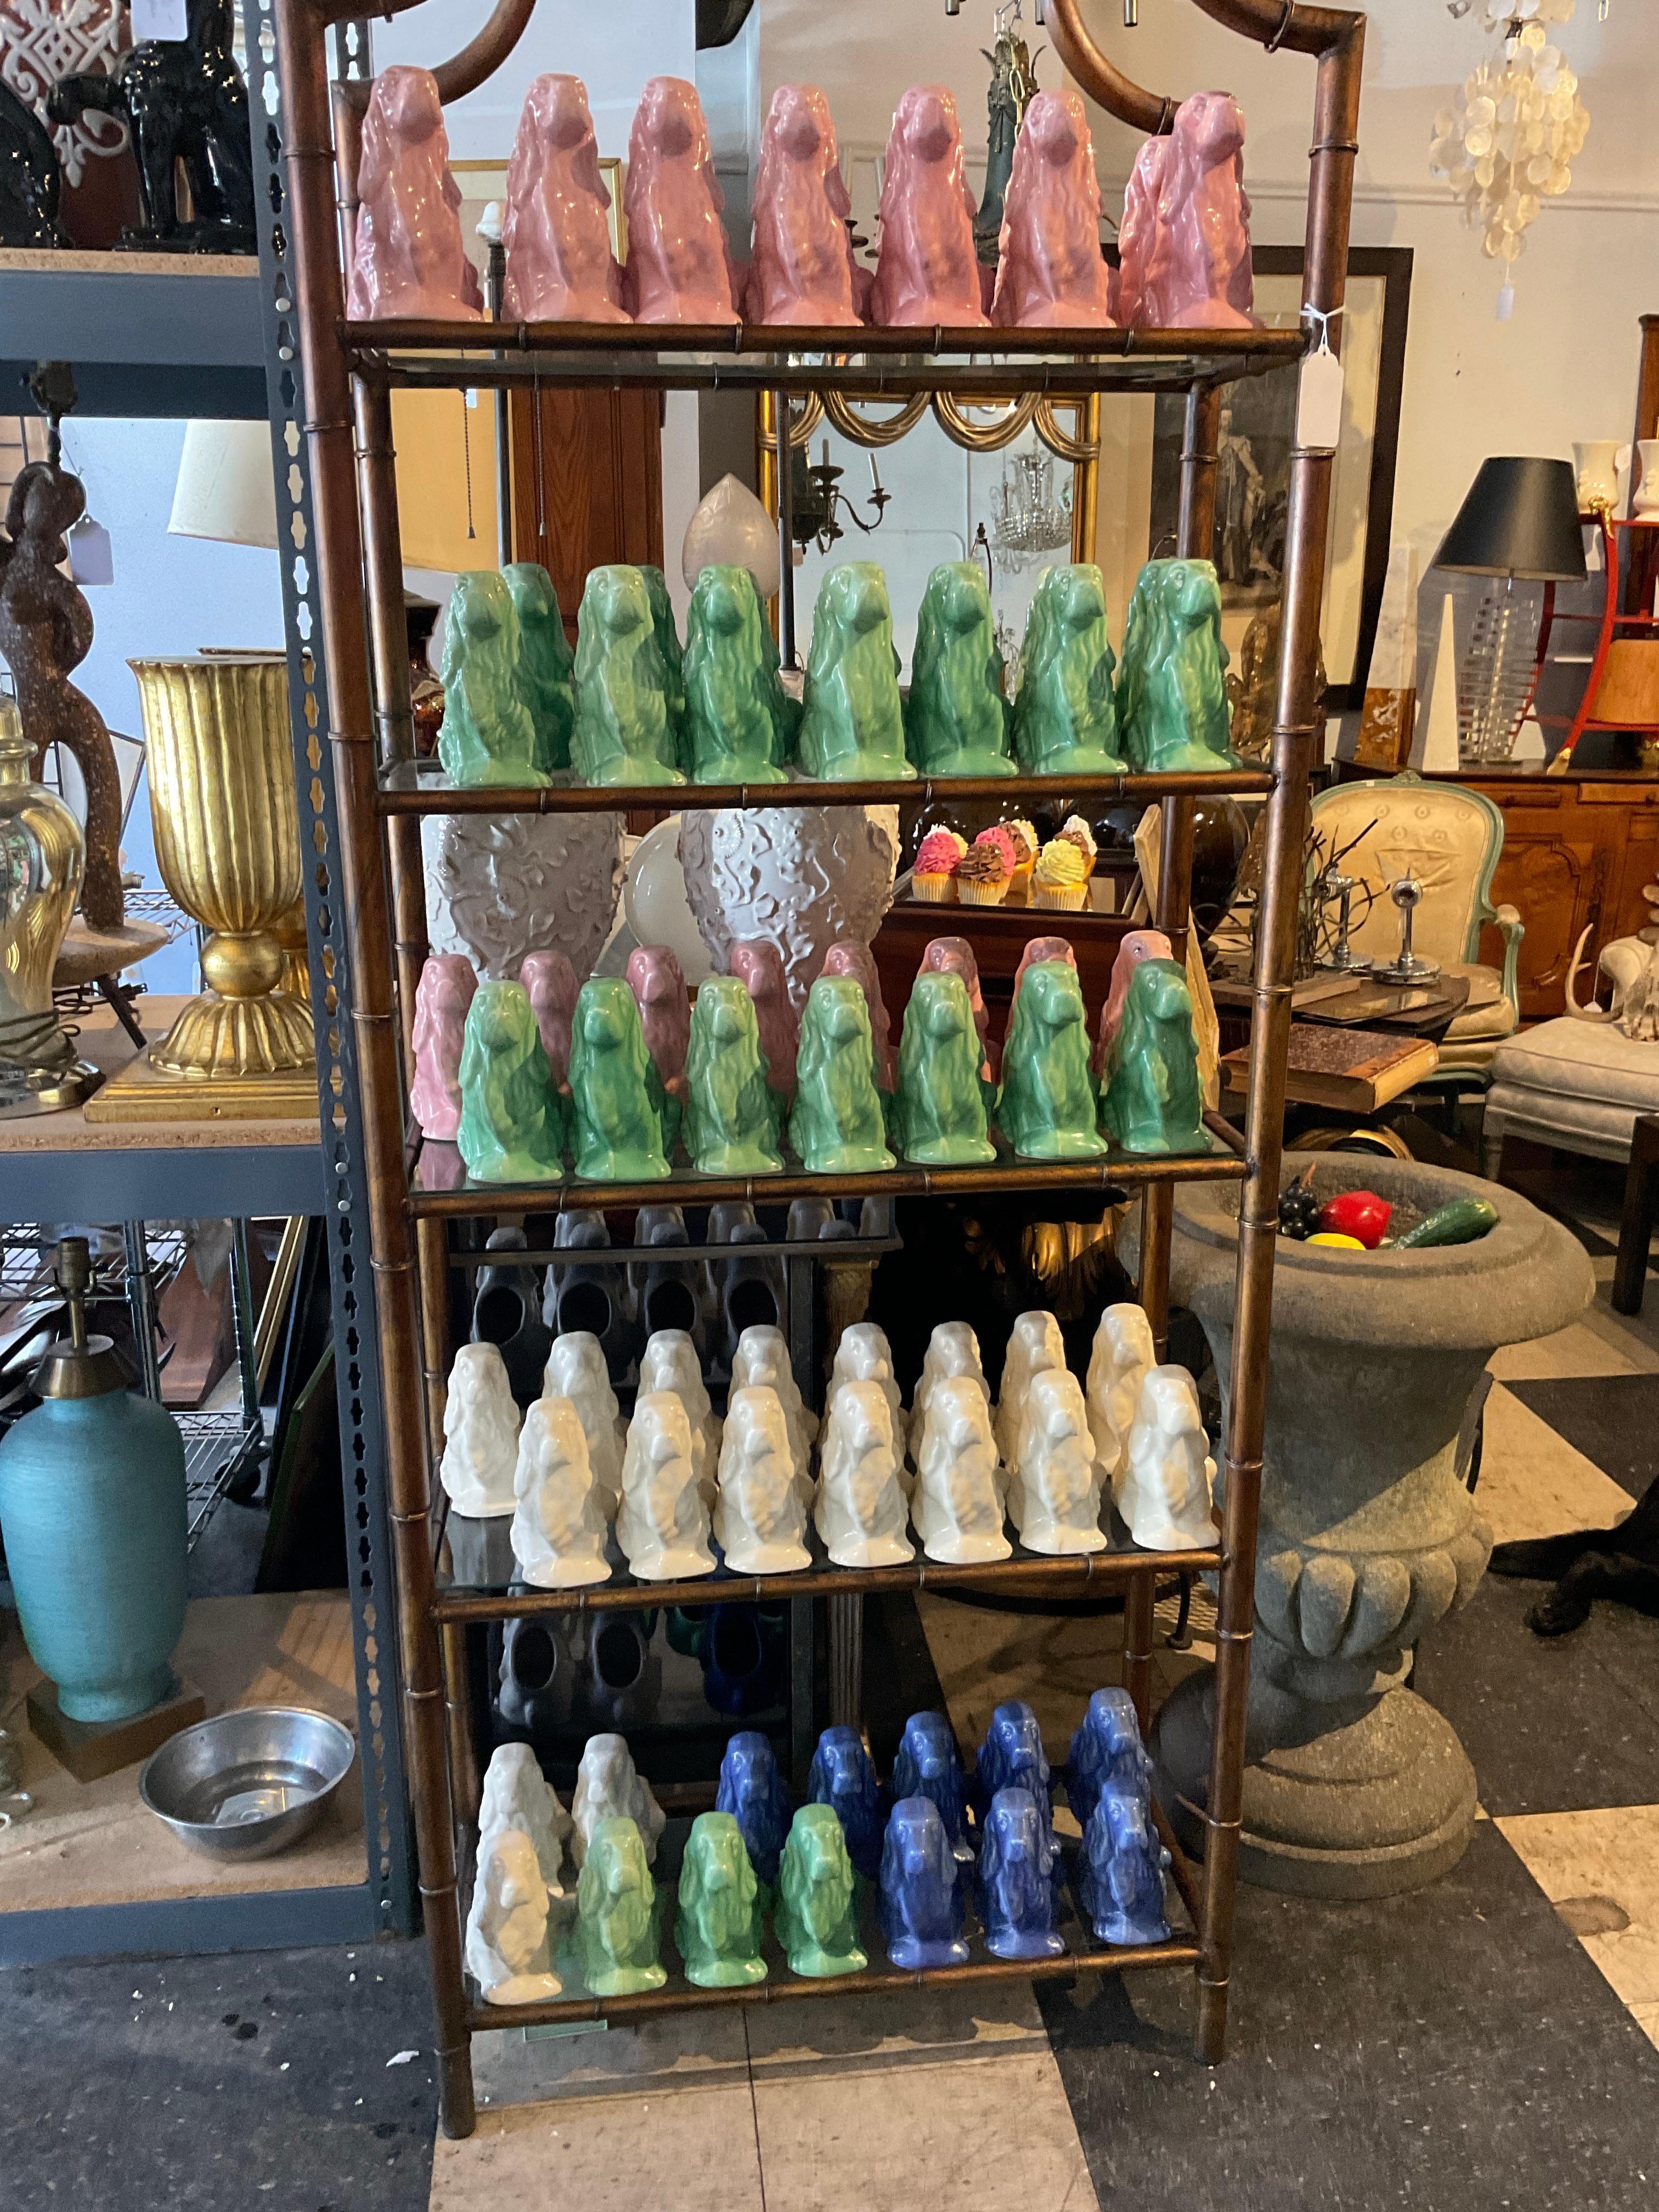 Collectional de 86 jardinières en forme de cocker de Shawnee Pottery des années 1950.
8 Bleu
28 vert
28 Whiting
22 rose